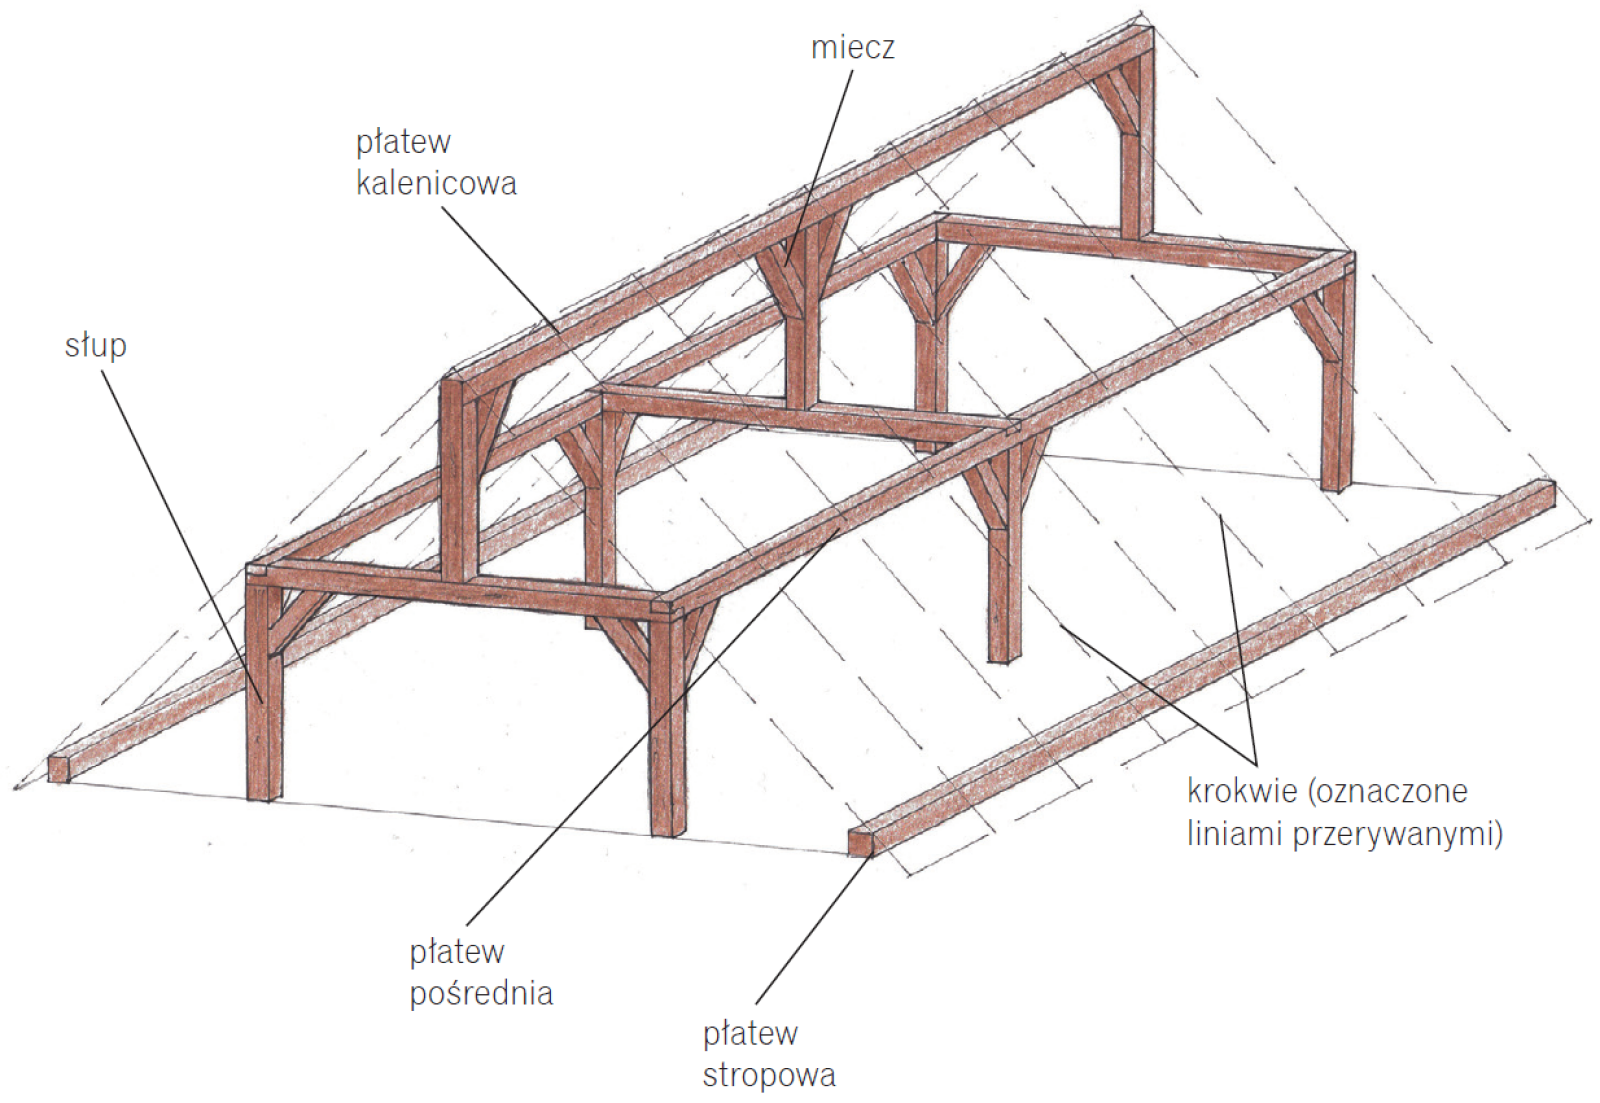 Крыши деревянных домов: элементы, устройство, конструкция строения